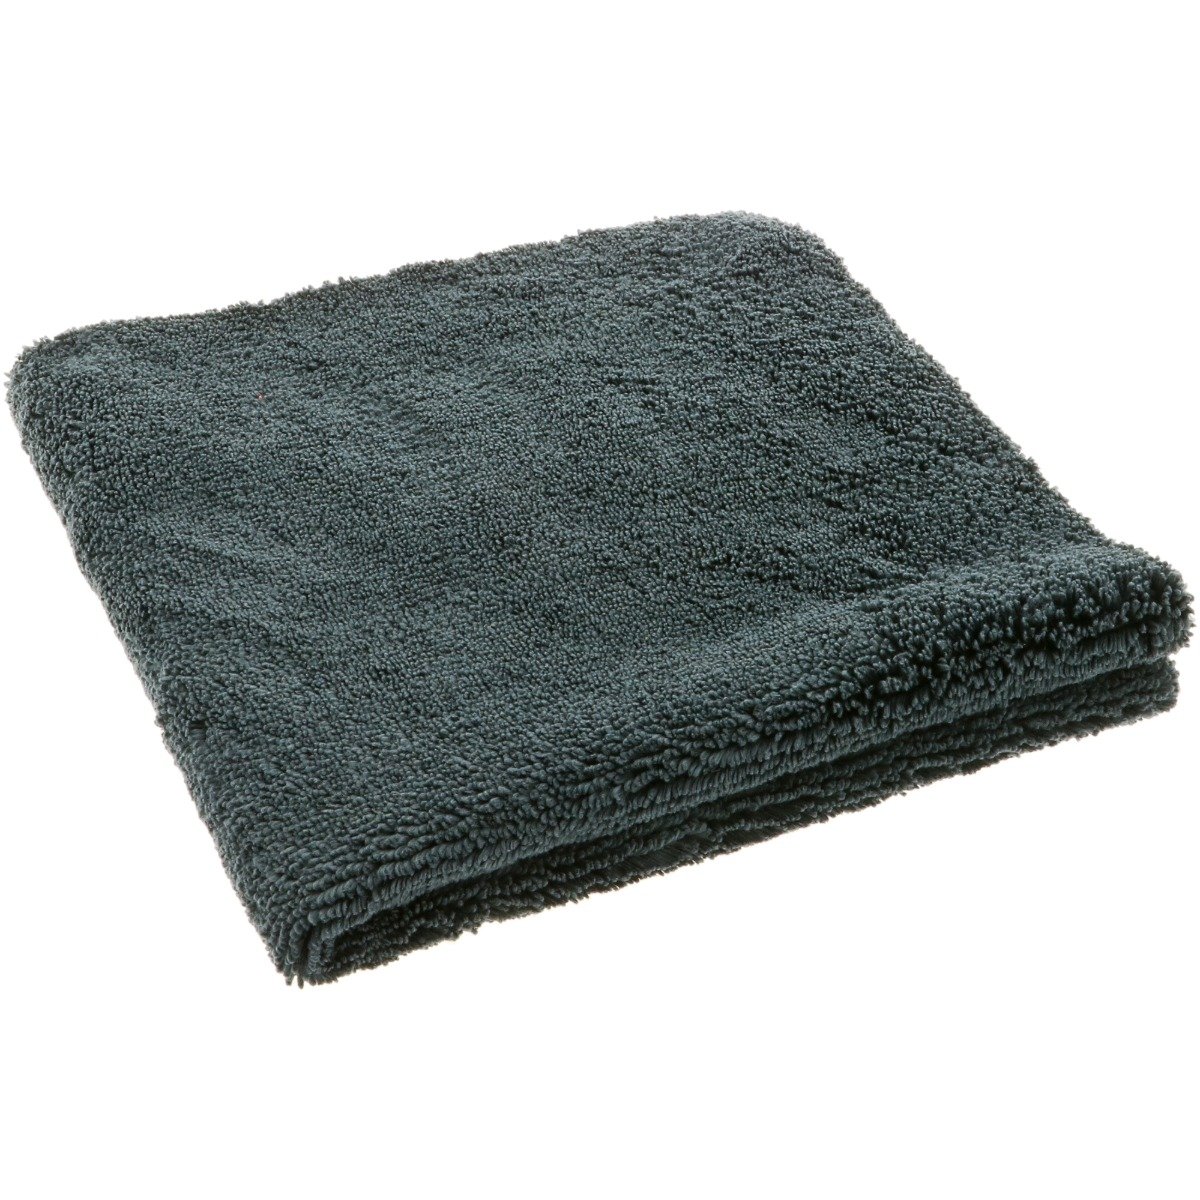 Creature Edgeless Edgeless Dual-Pile Microfiber Towel - 41x41cm-Creature Black